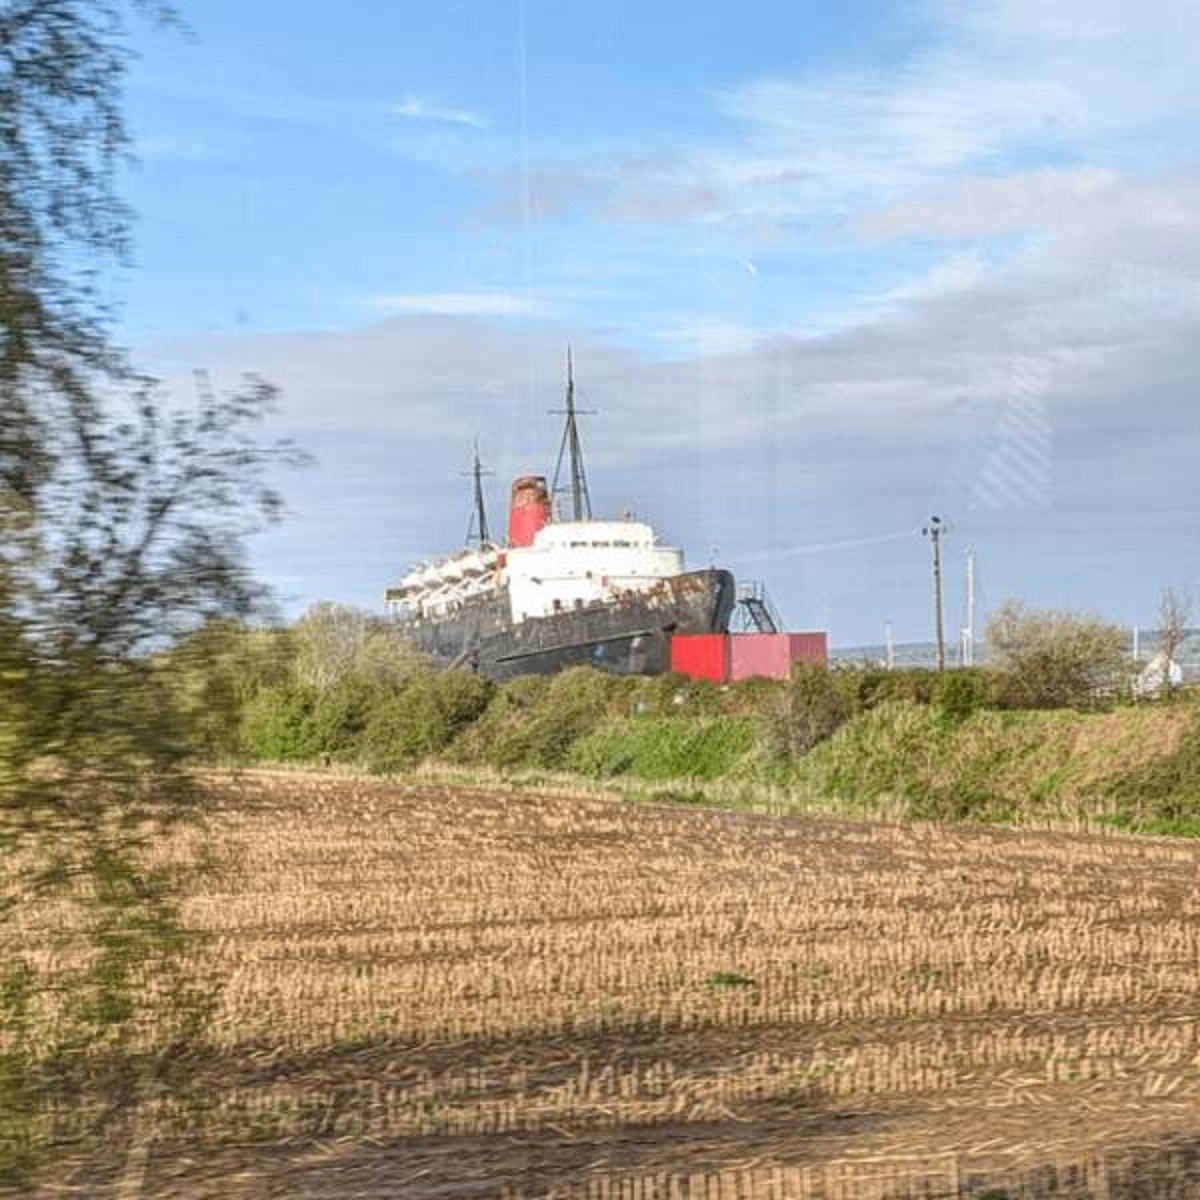 "Abandoned luxury cruise ship I saw on the train"